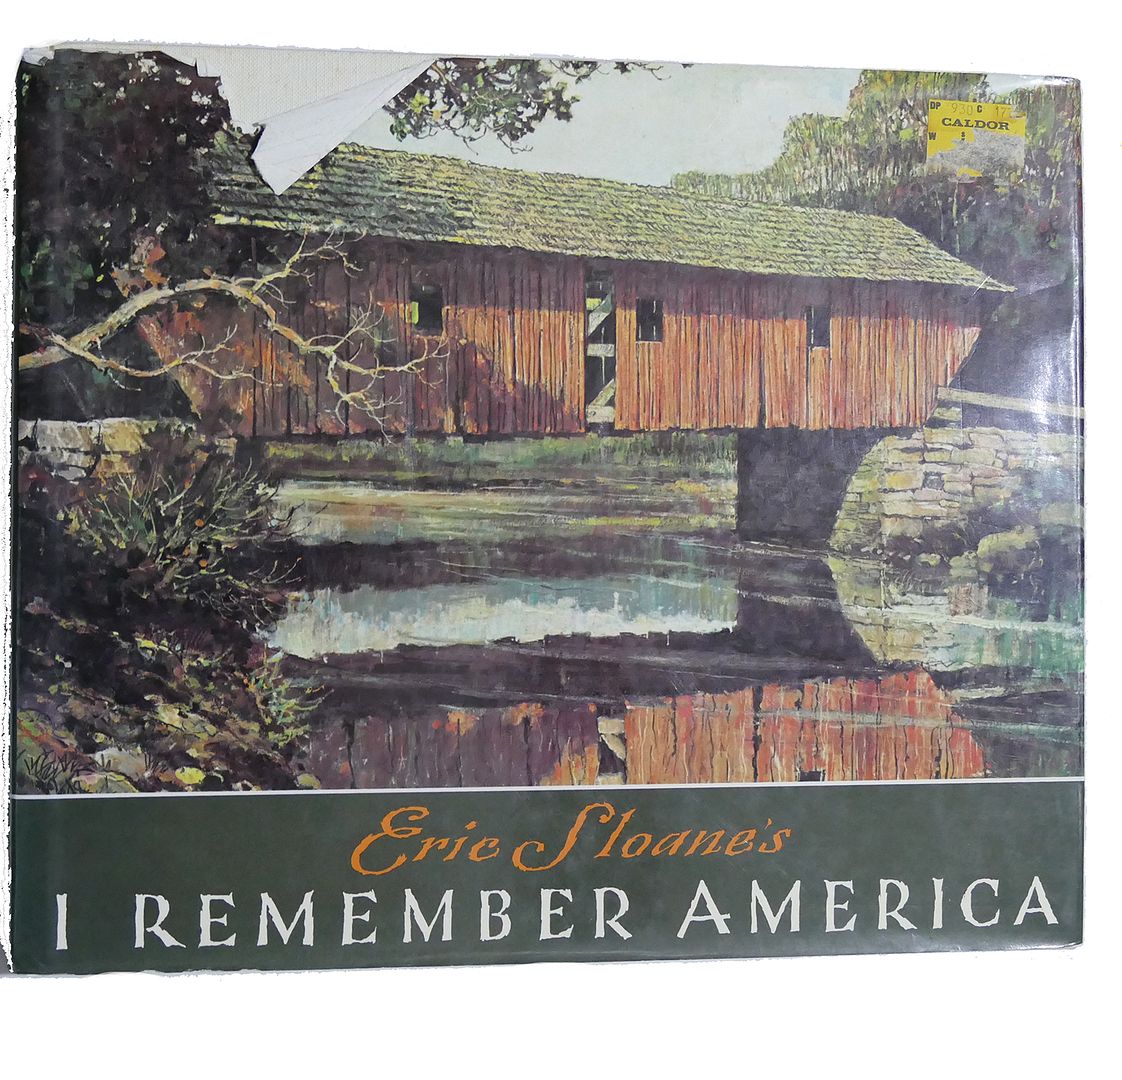 ERIC SLOANE - Eric Sloane's I Remember America